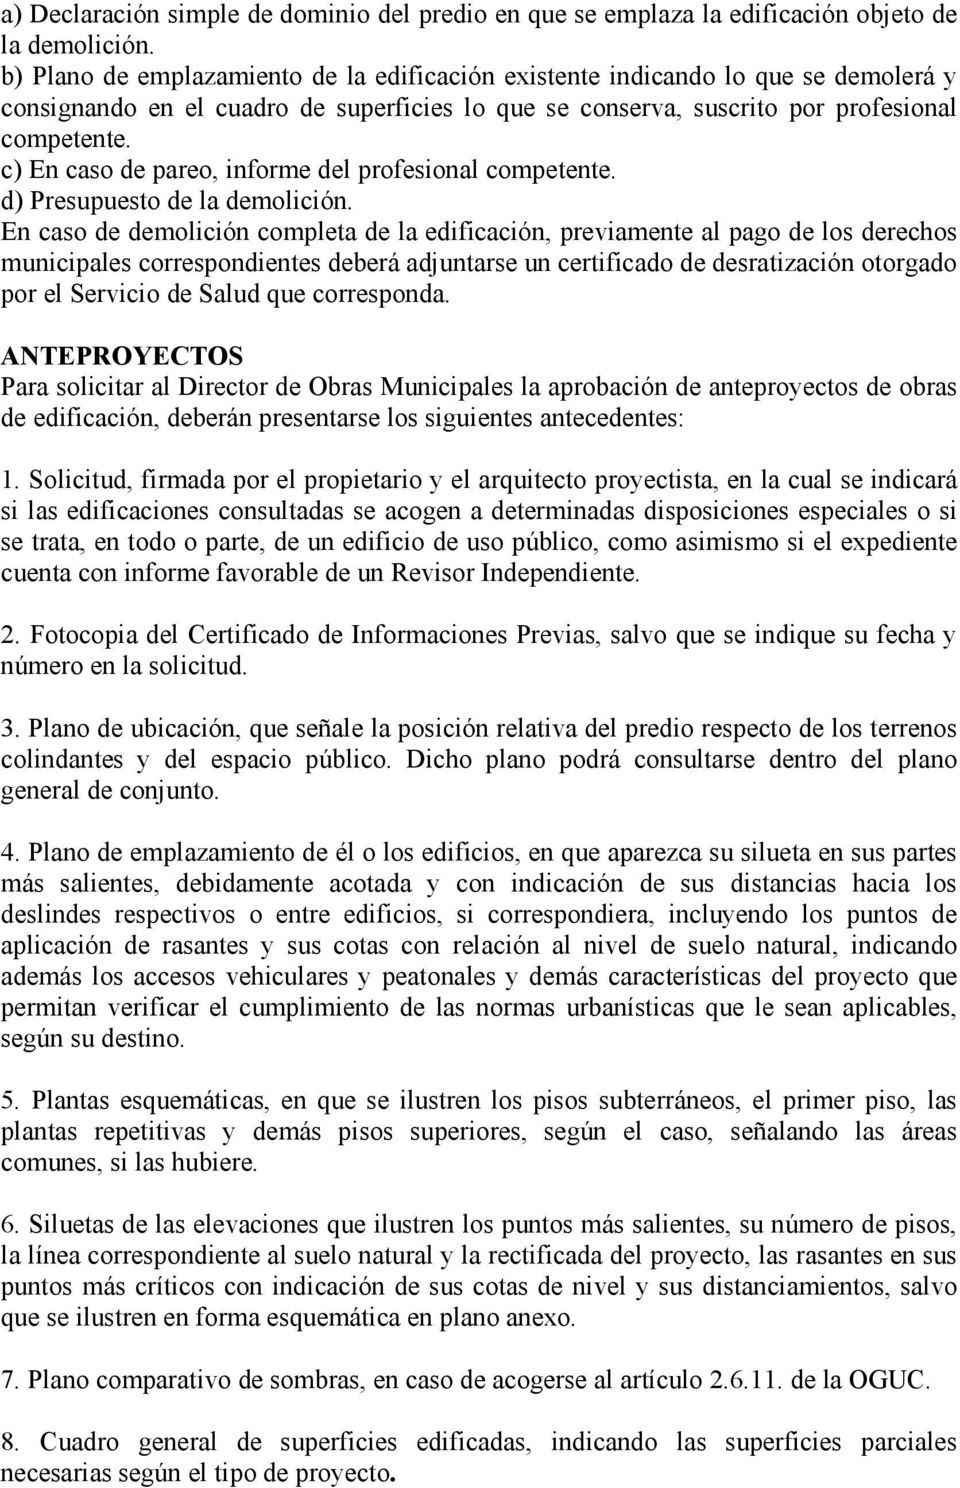 c) En caso de pareo, informe del profesional competente. d) Presupuesto de la demolición.